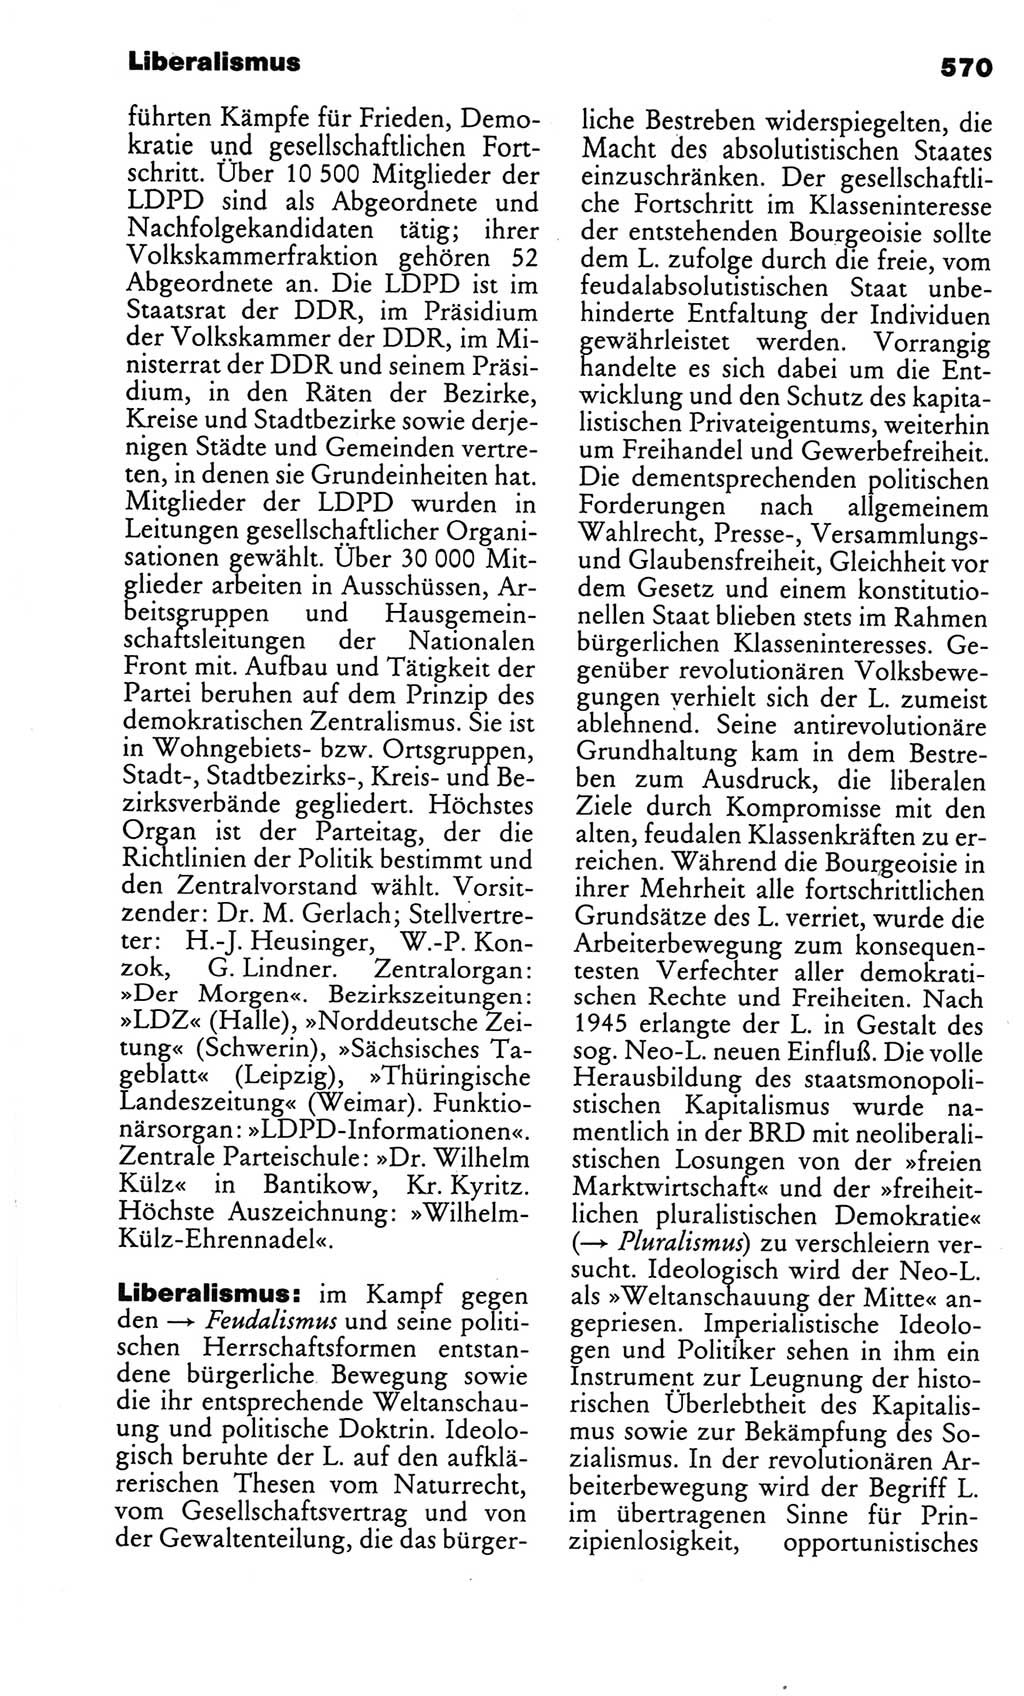 Kleines politisches Wörterbuch [Deutsche Demokratische Republik (DDR)] 1986, Seite 570 (Kl. pol. Wb. DDR 1986, S. 570)